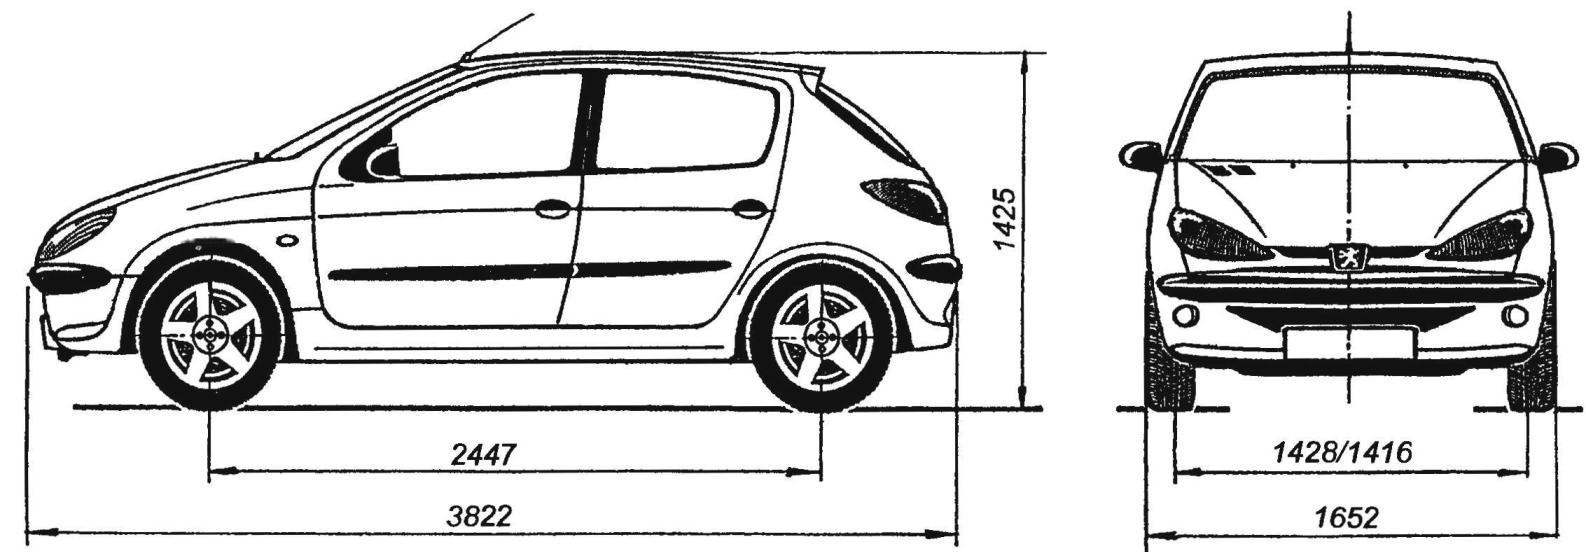 Geometric diagram of the five-door hatchback PEUGEOT 206